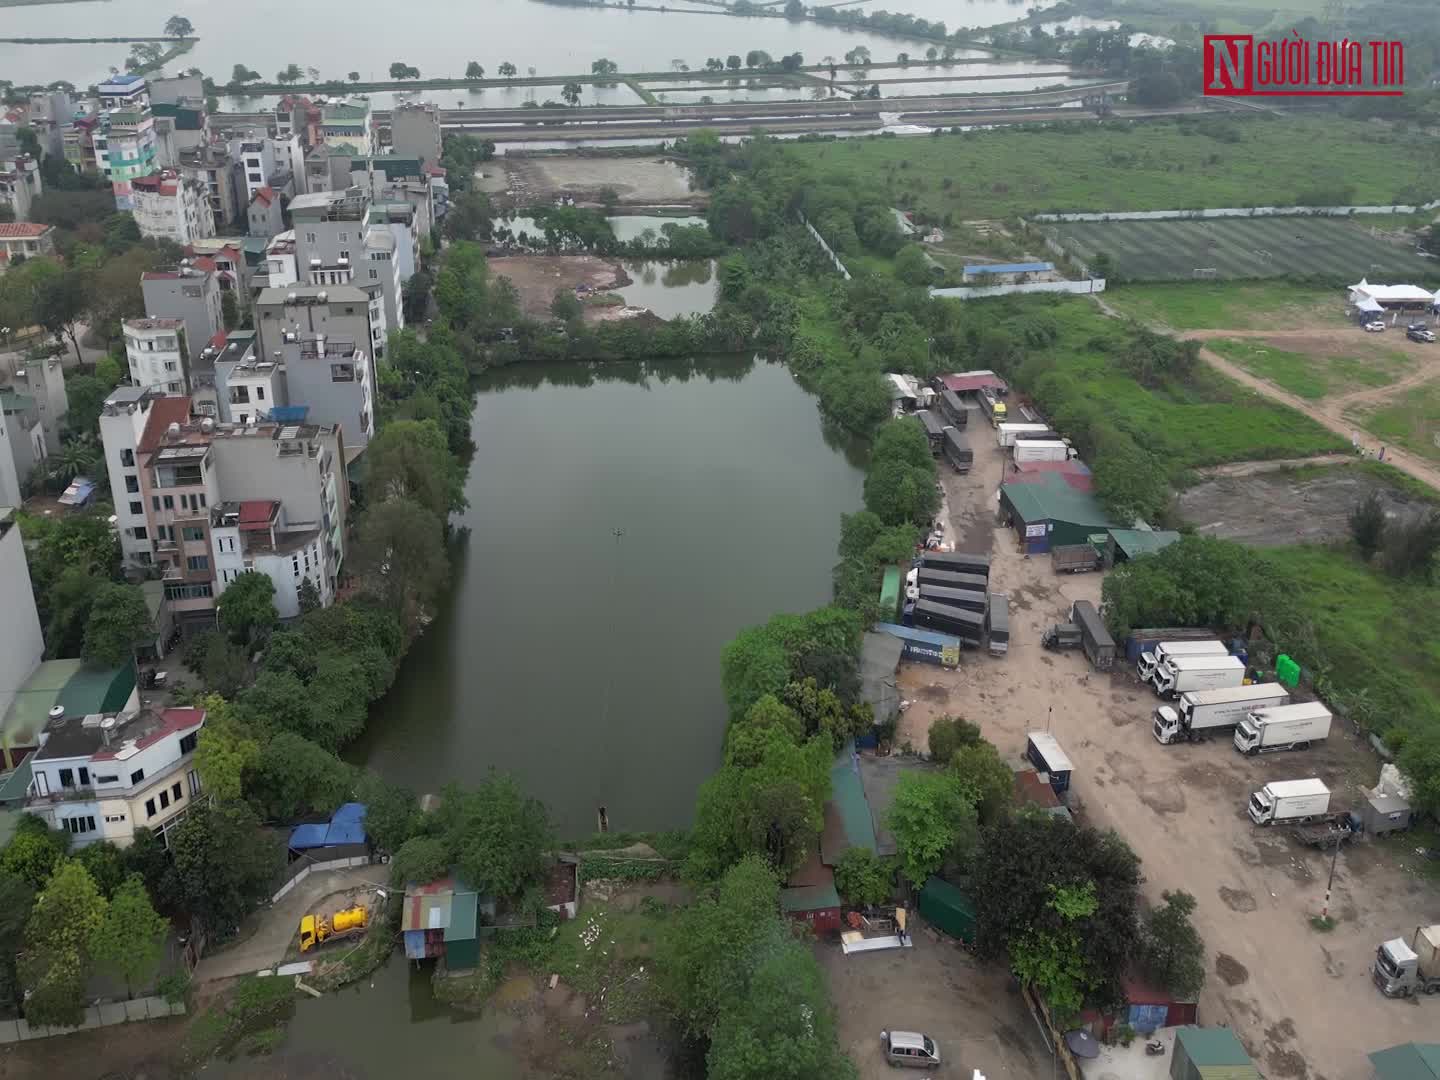 Hồ sơ điều tra - Vụ đổ phế thải lấp hồ tại Hà Nội, lãnh đạo phường nói 'tôi biết hết'